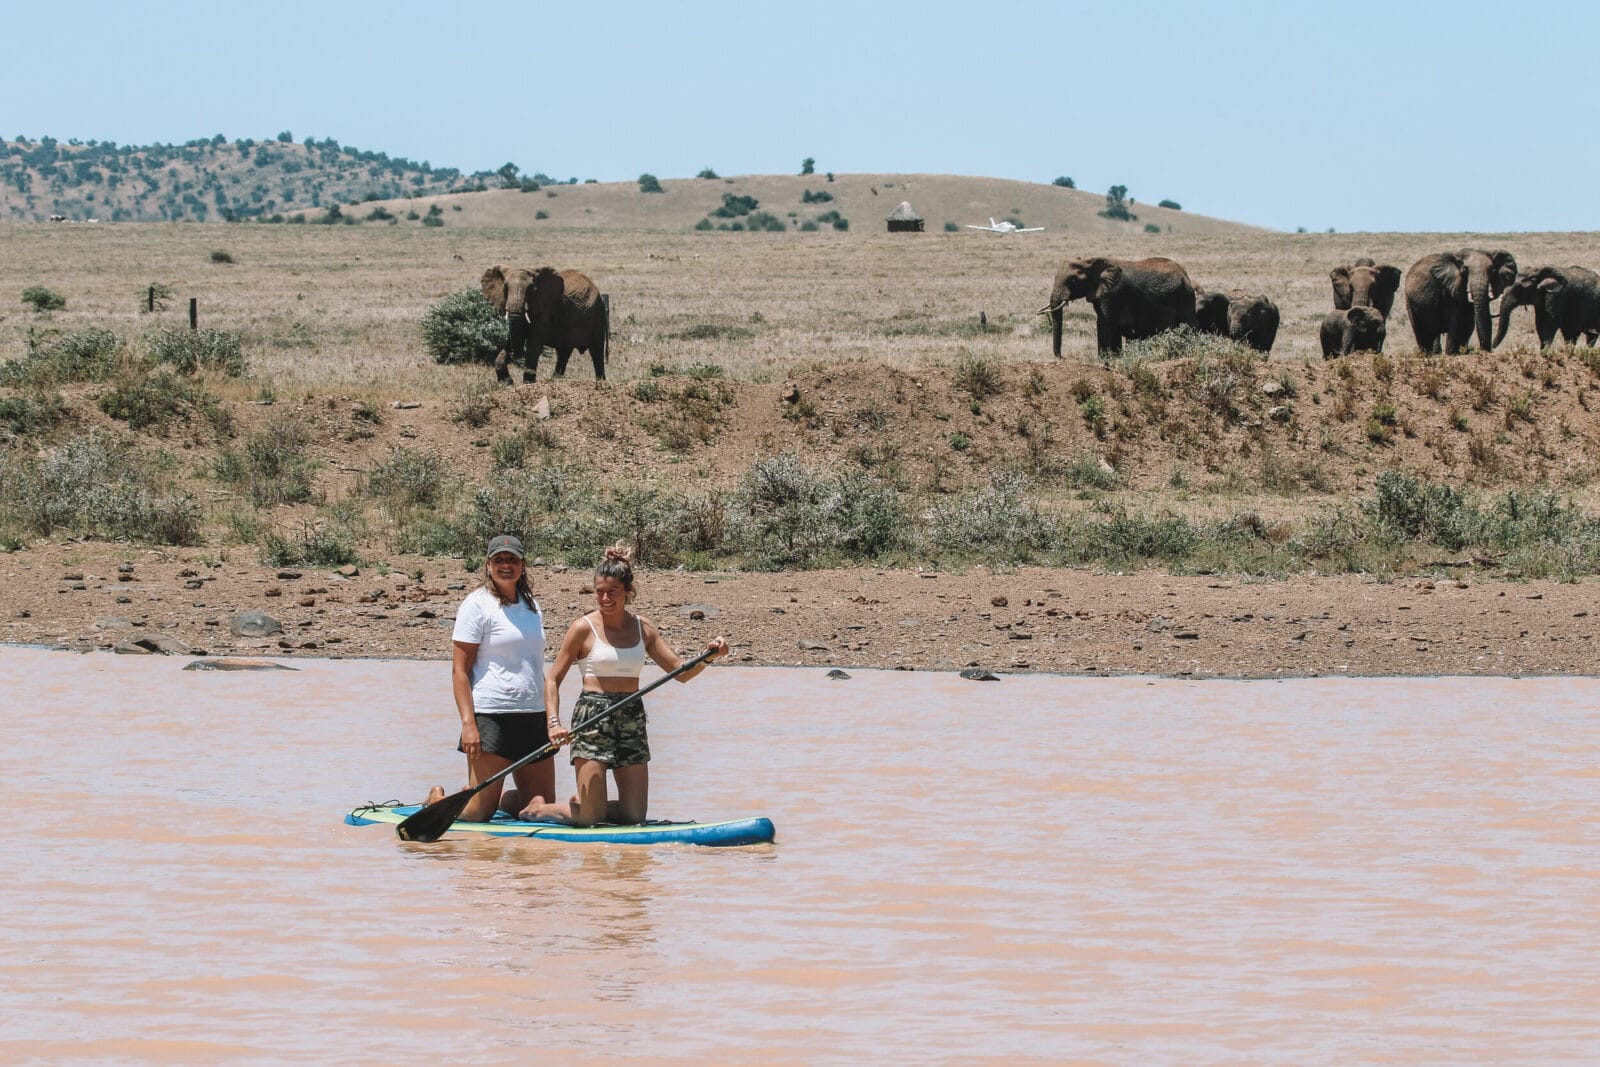 safari activities